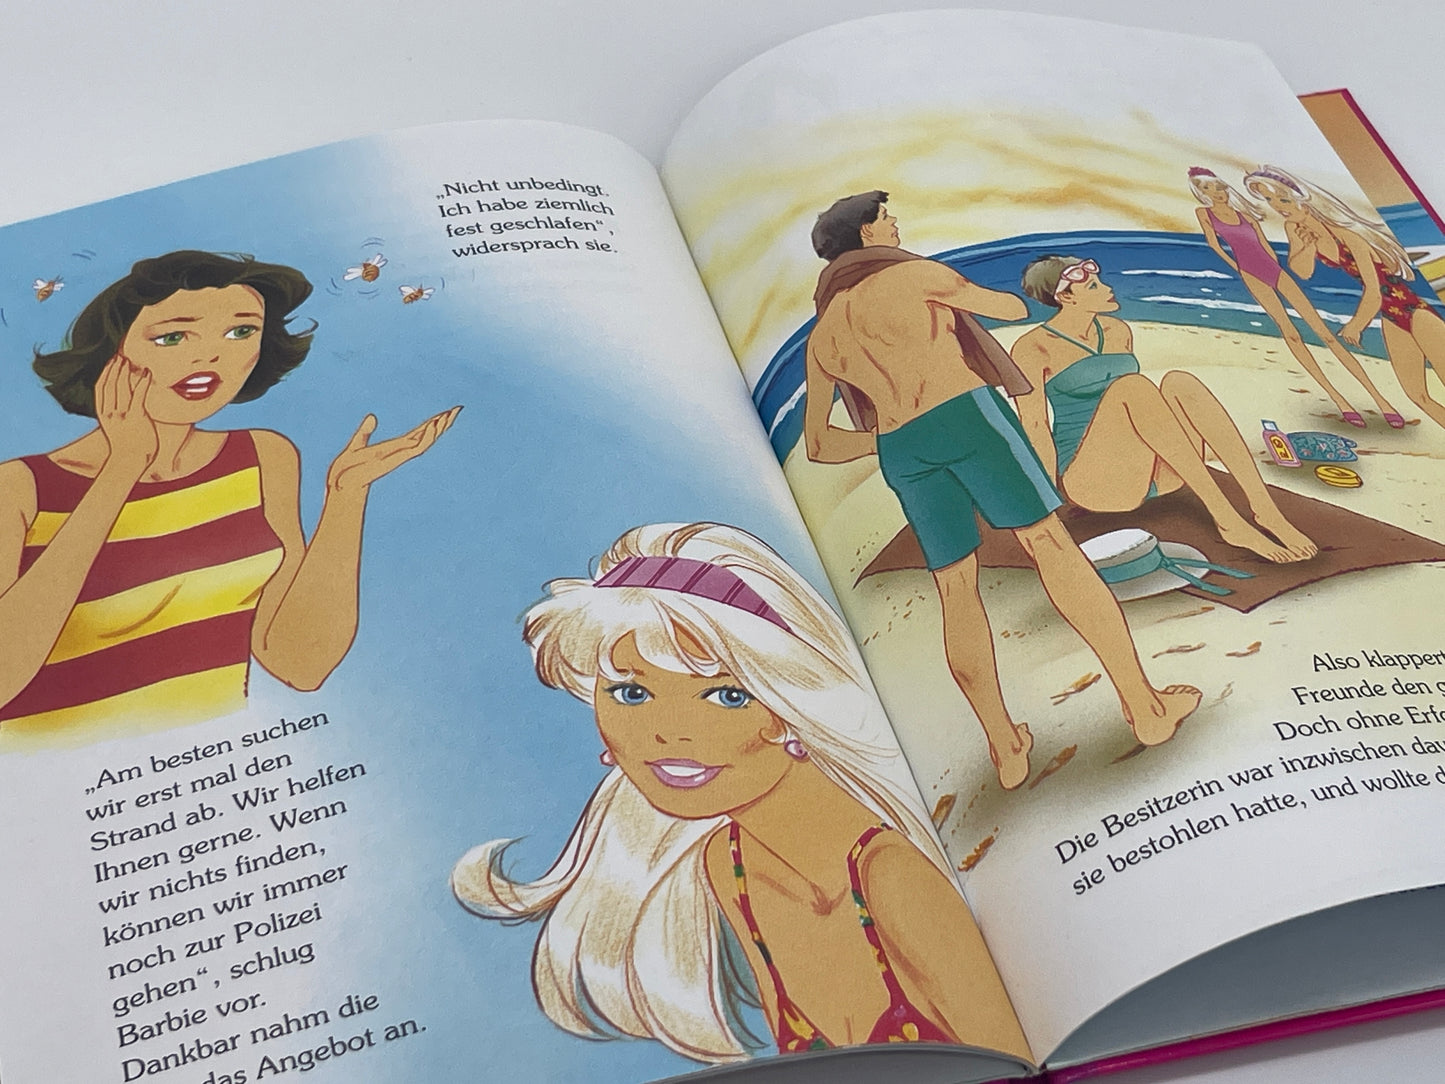 Barbie Kinderbuch "Barbie und die Delphine" Egmont Horizont Verlag (1997)